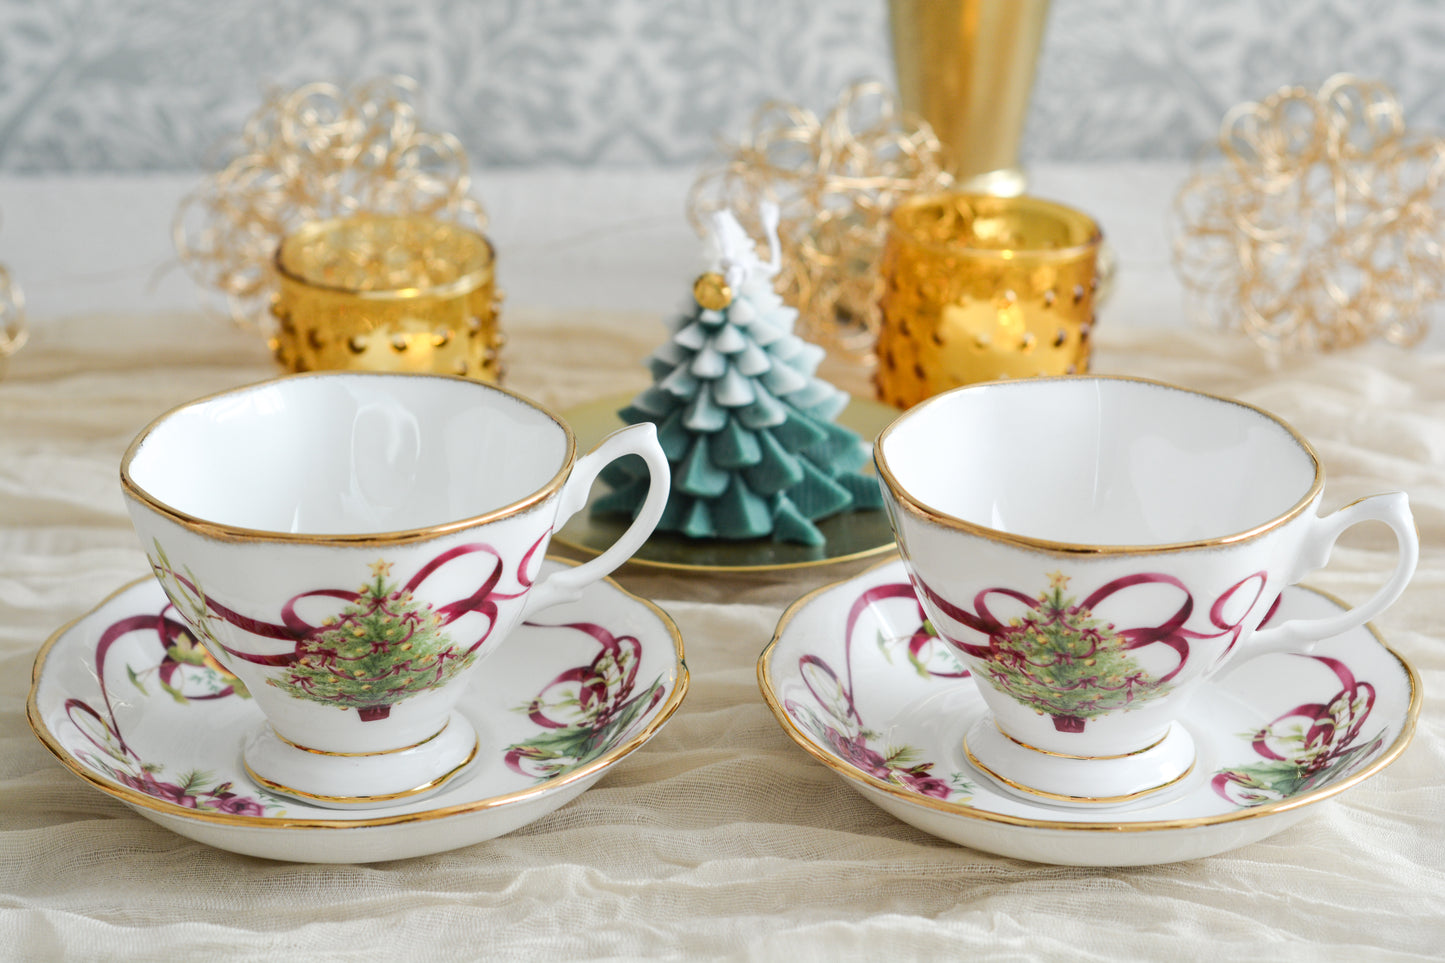 ロイヤルアルバートの代表的なシリーズオールドイングリッシュツリー。このシリーズは色々なバリエーションが発表されています。こちらのクリスマスツリーもその一つ。大きなクリスマスツリーにマルーンカラーのリボンがとても華やかなデザインで人気があります。クリスマスのティータイムにぴったりのカップでクリスマスのテーブルをお楽しみくださいね。